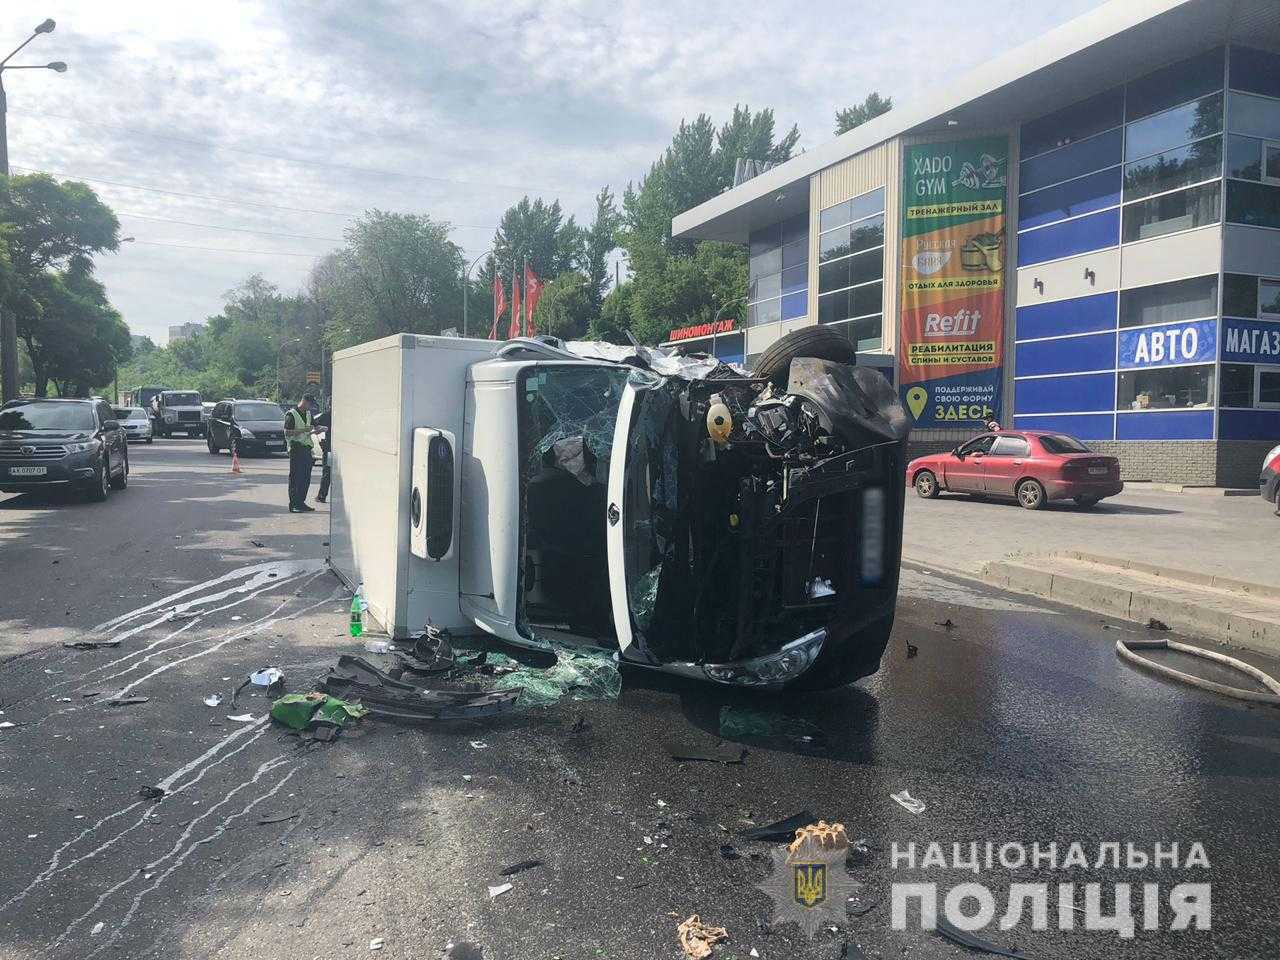 ДТП с маршруткой в Харькове: машина курсировала нелегально